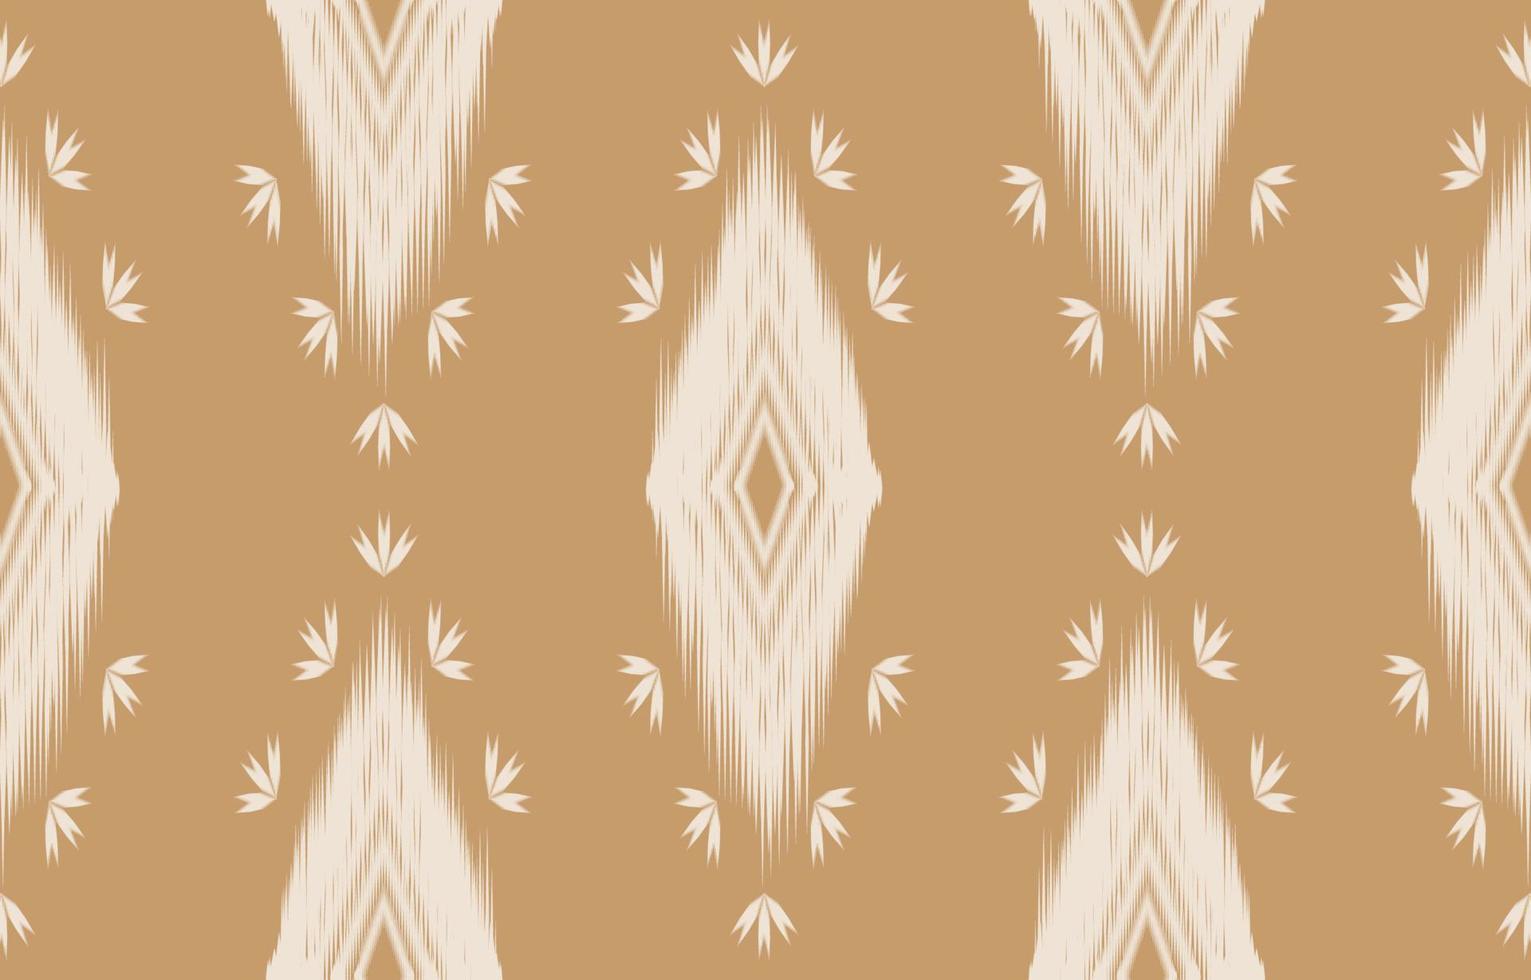 motif ikat marron et blanc sans couture géométrique style de broderie traditionnelle orientale ethnique.design pour le fond, tapis, tapis, papier peint, vêtements, emballage, batik, tissu, illustration vectorielle. vecteur